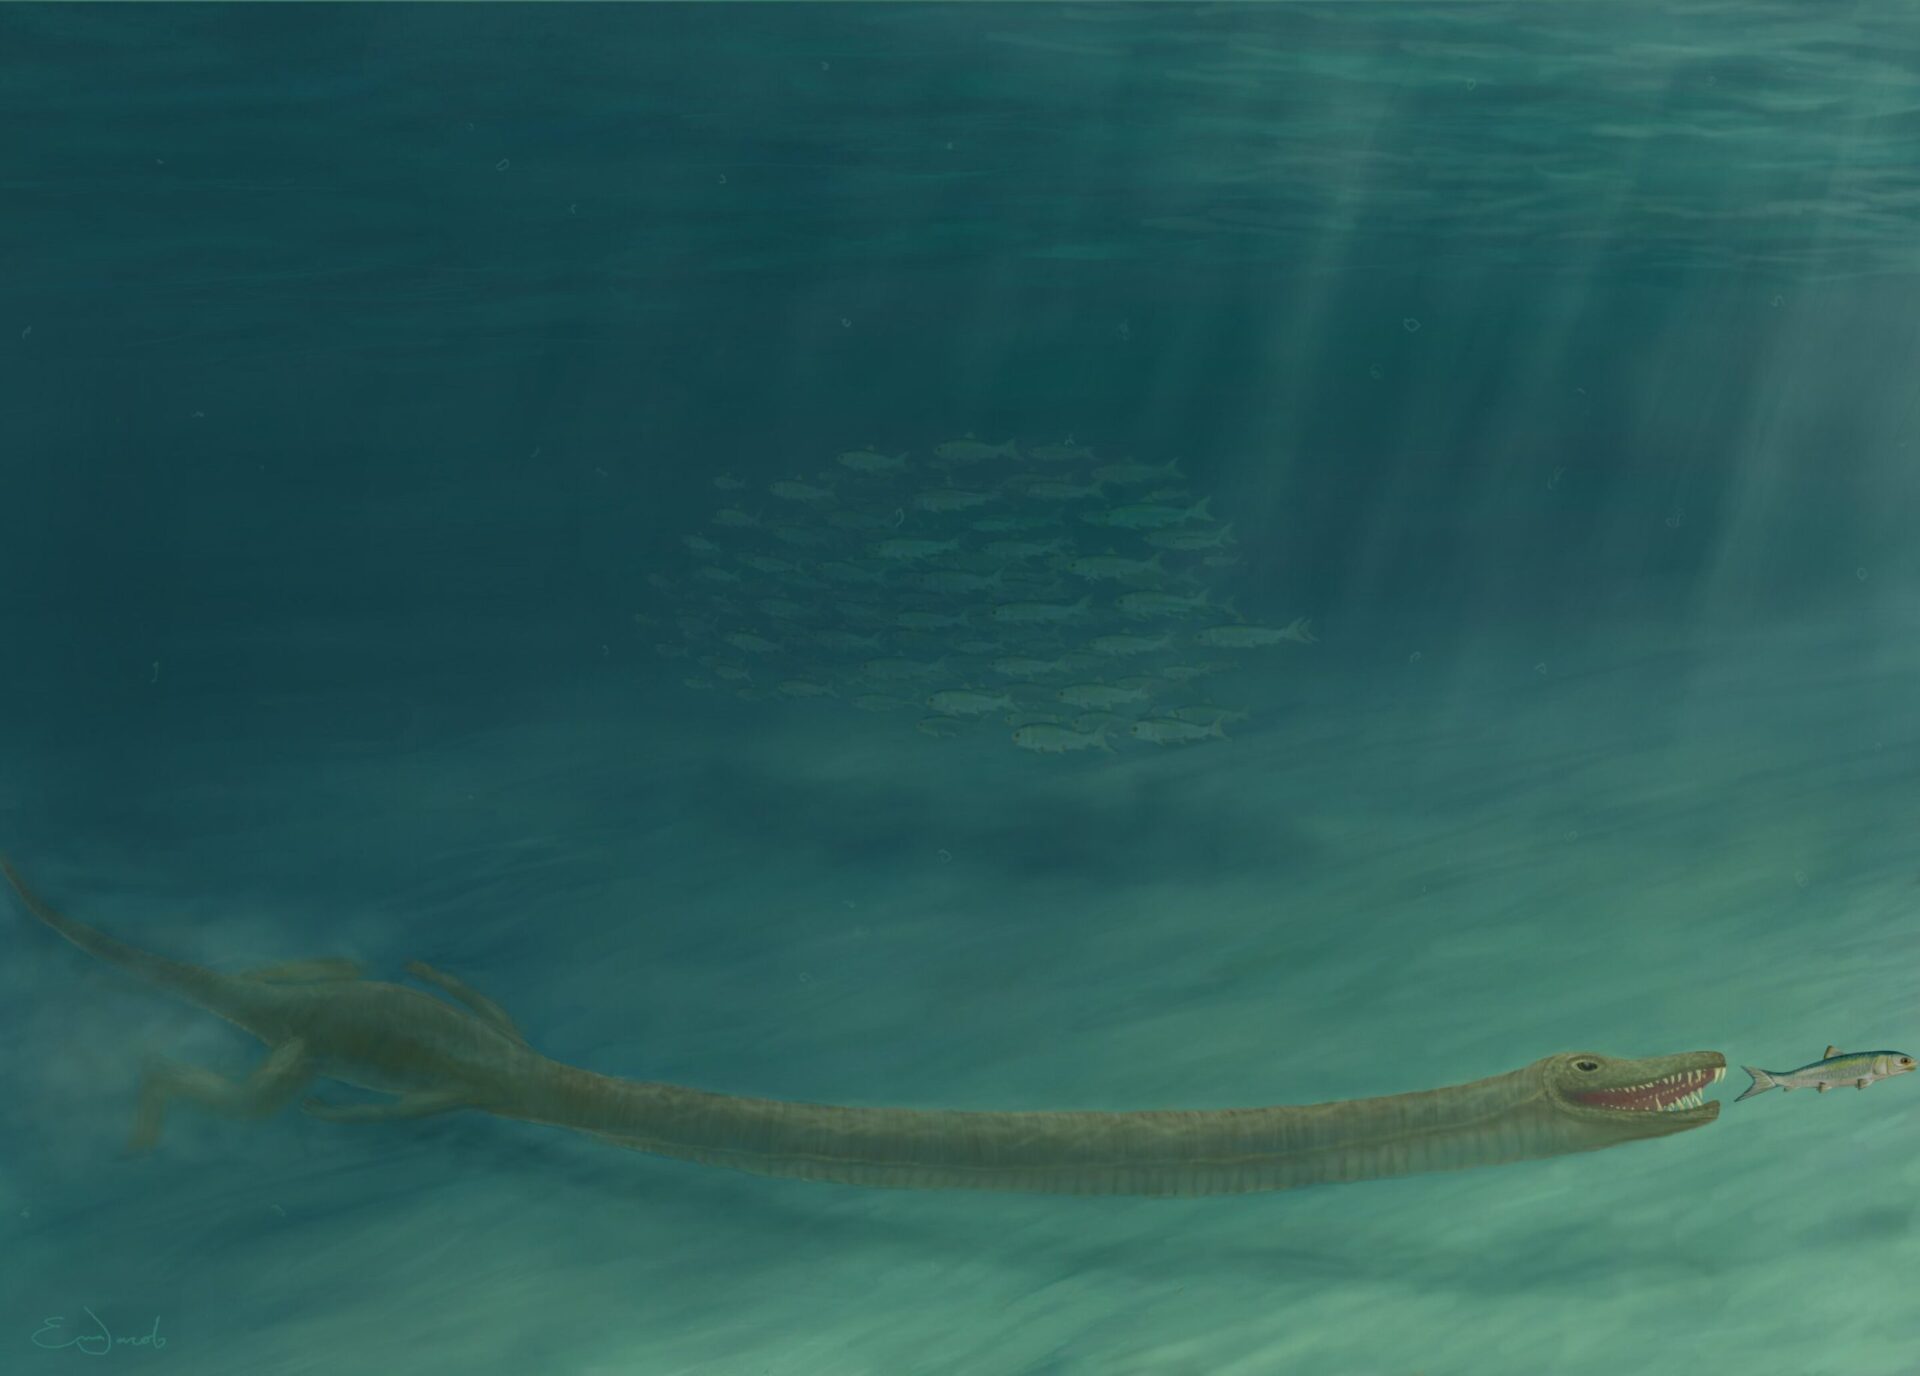 とんでもなく長い首を持つ古代の爬虫類がいかにして生き延びていたのかが明らかに